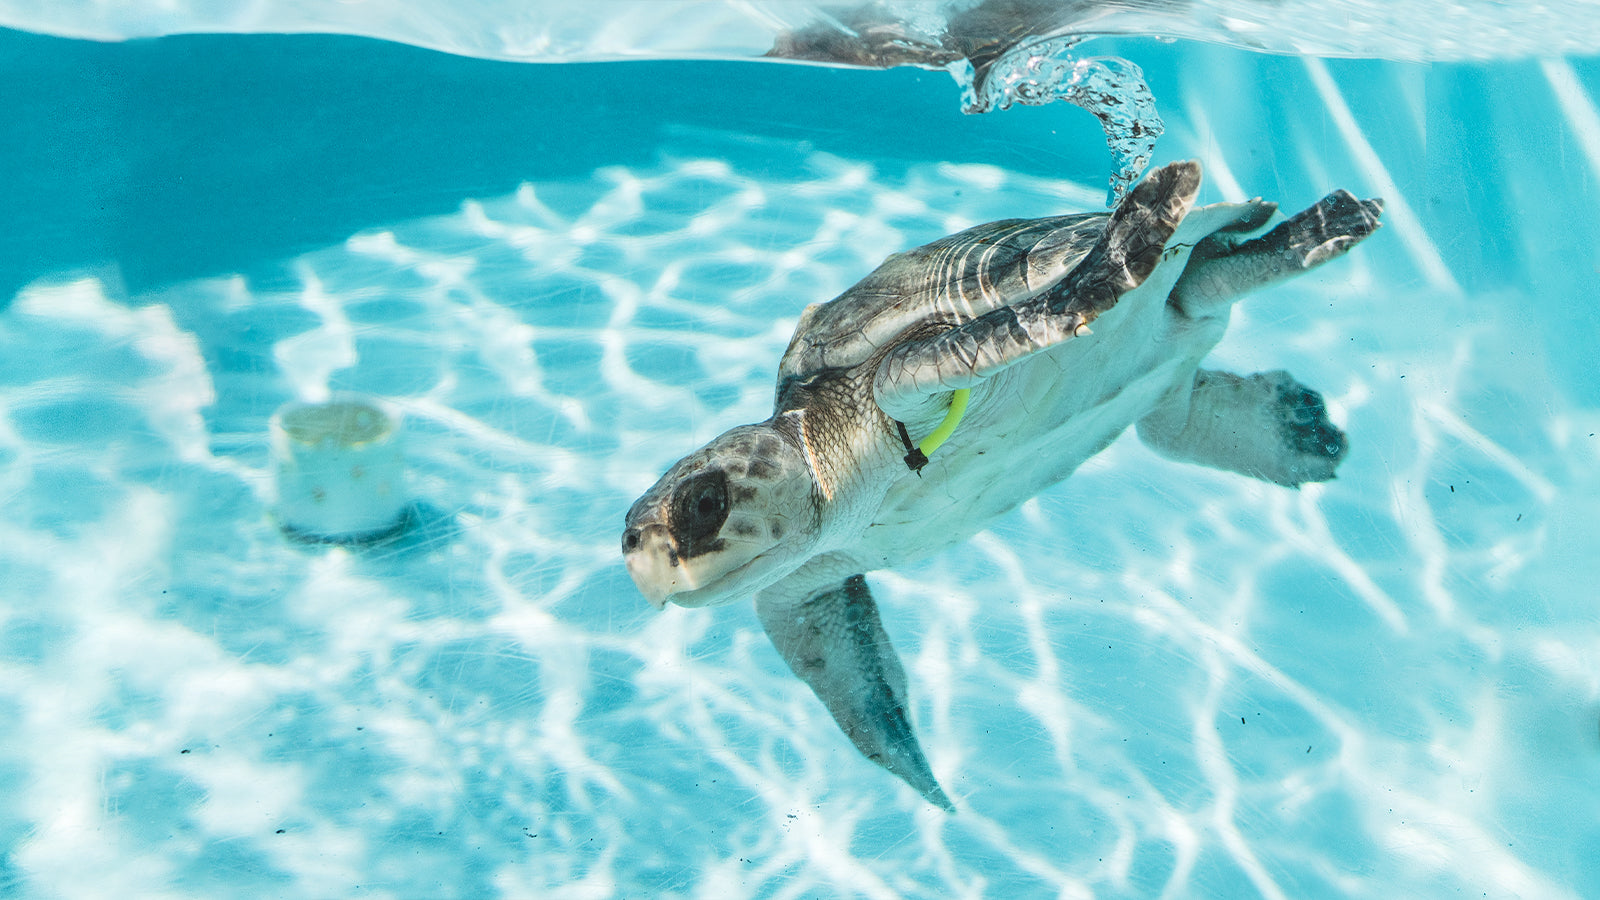 Rehabilitating loggerhead sea turtle swimming in a rehabilitation pool